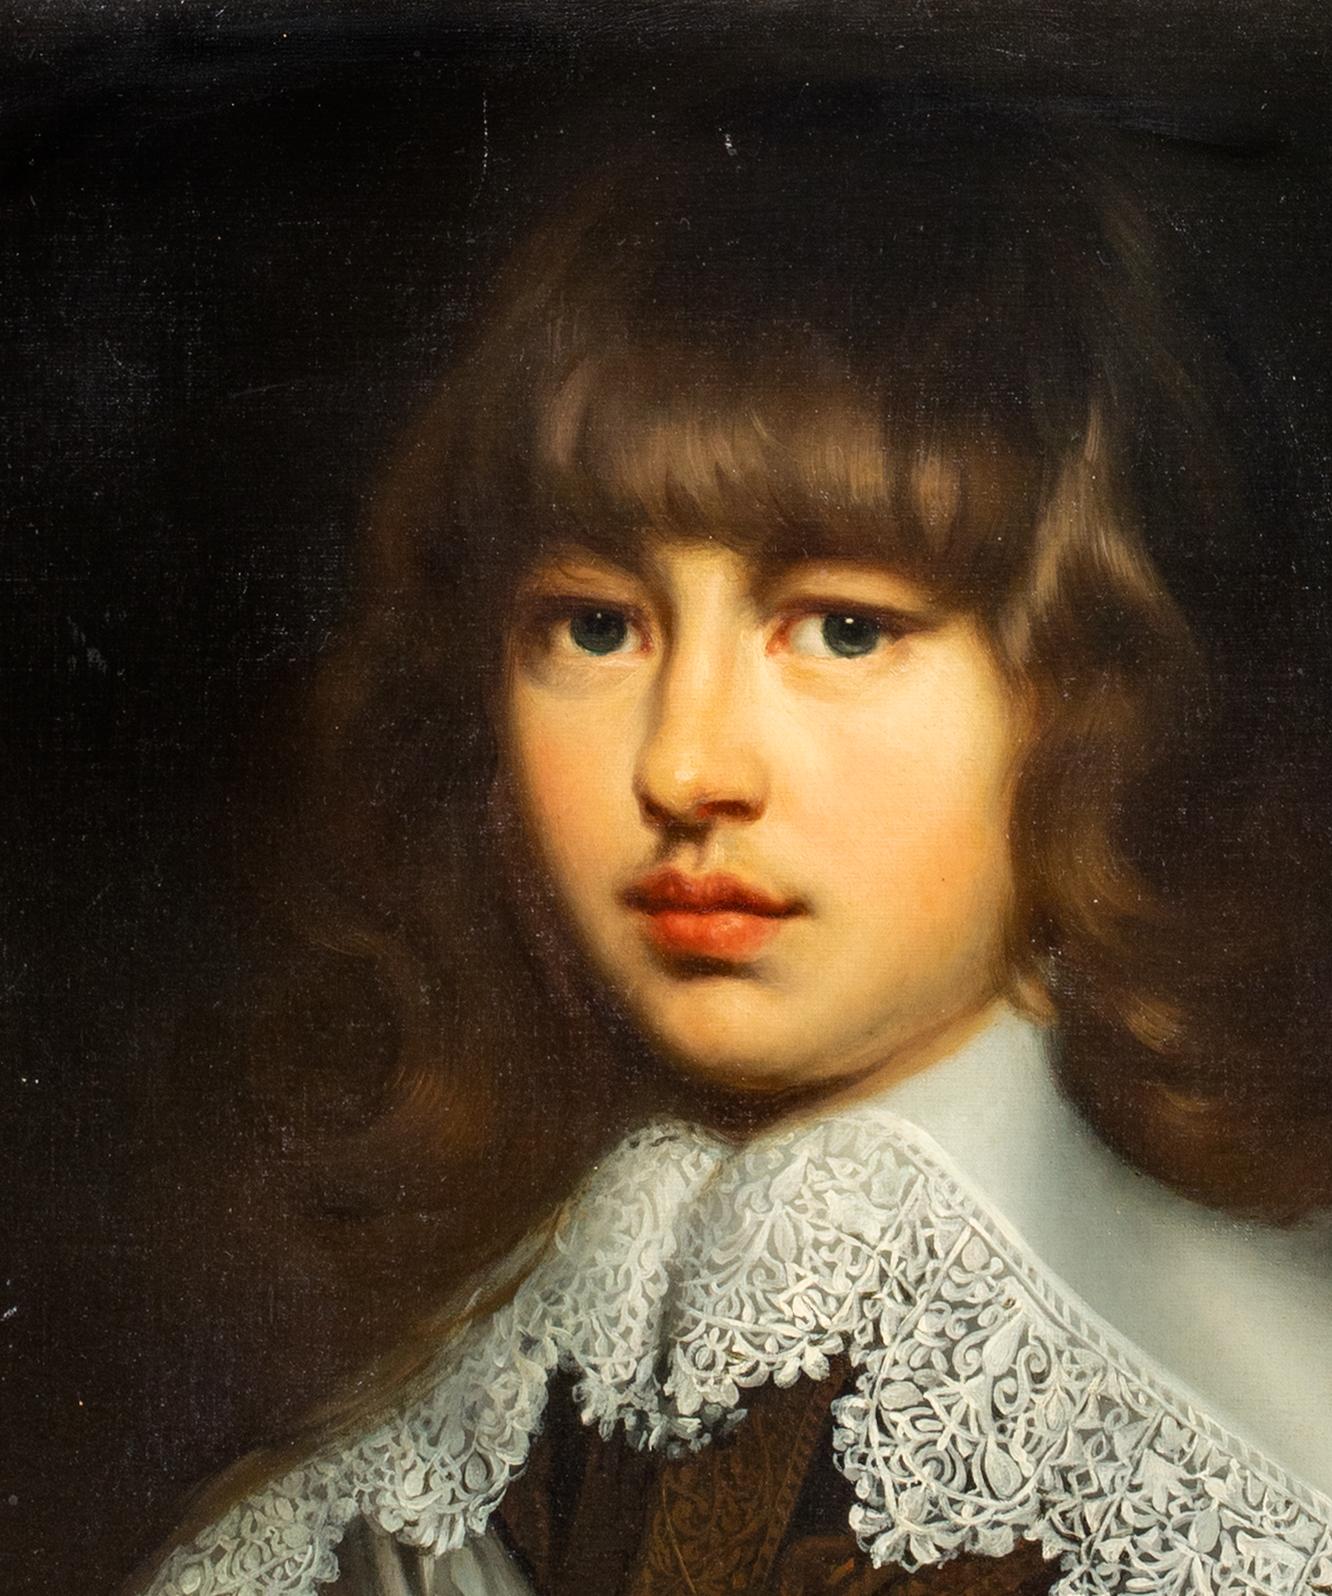 Porträt von Prinz Valdemar Christian aus Schleswig-Holstein, Dänemark 1622-1656 3